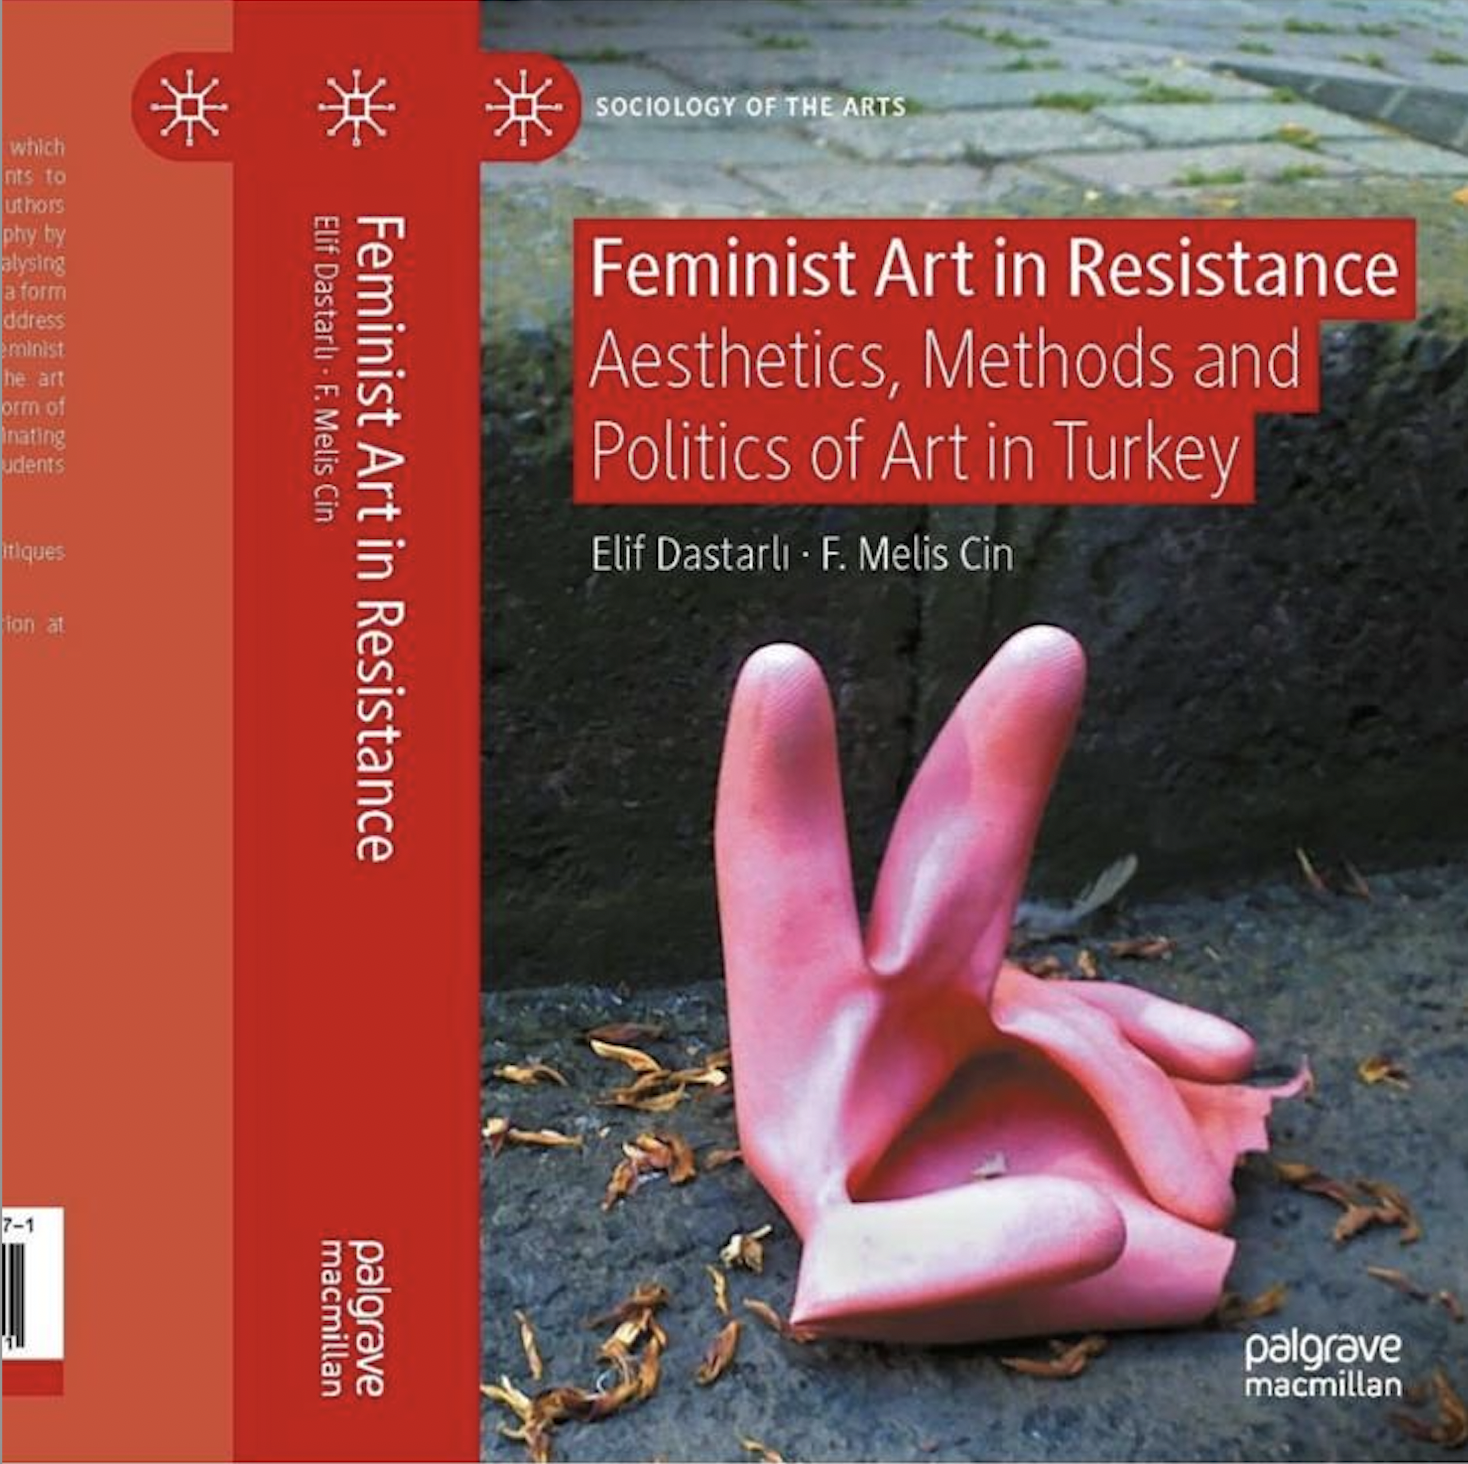 05/11/2022 - Neriman Polat'ın yapıtları Feminist Art in Resistance kitabında yer aldı